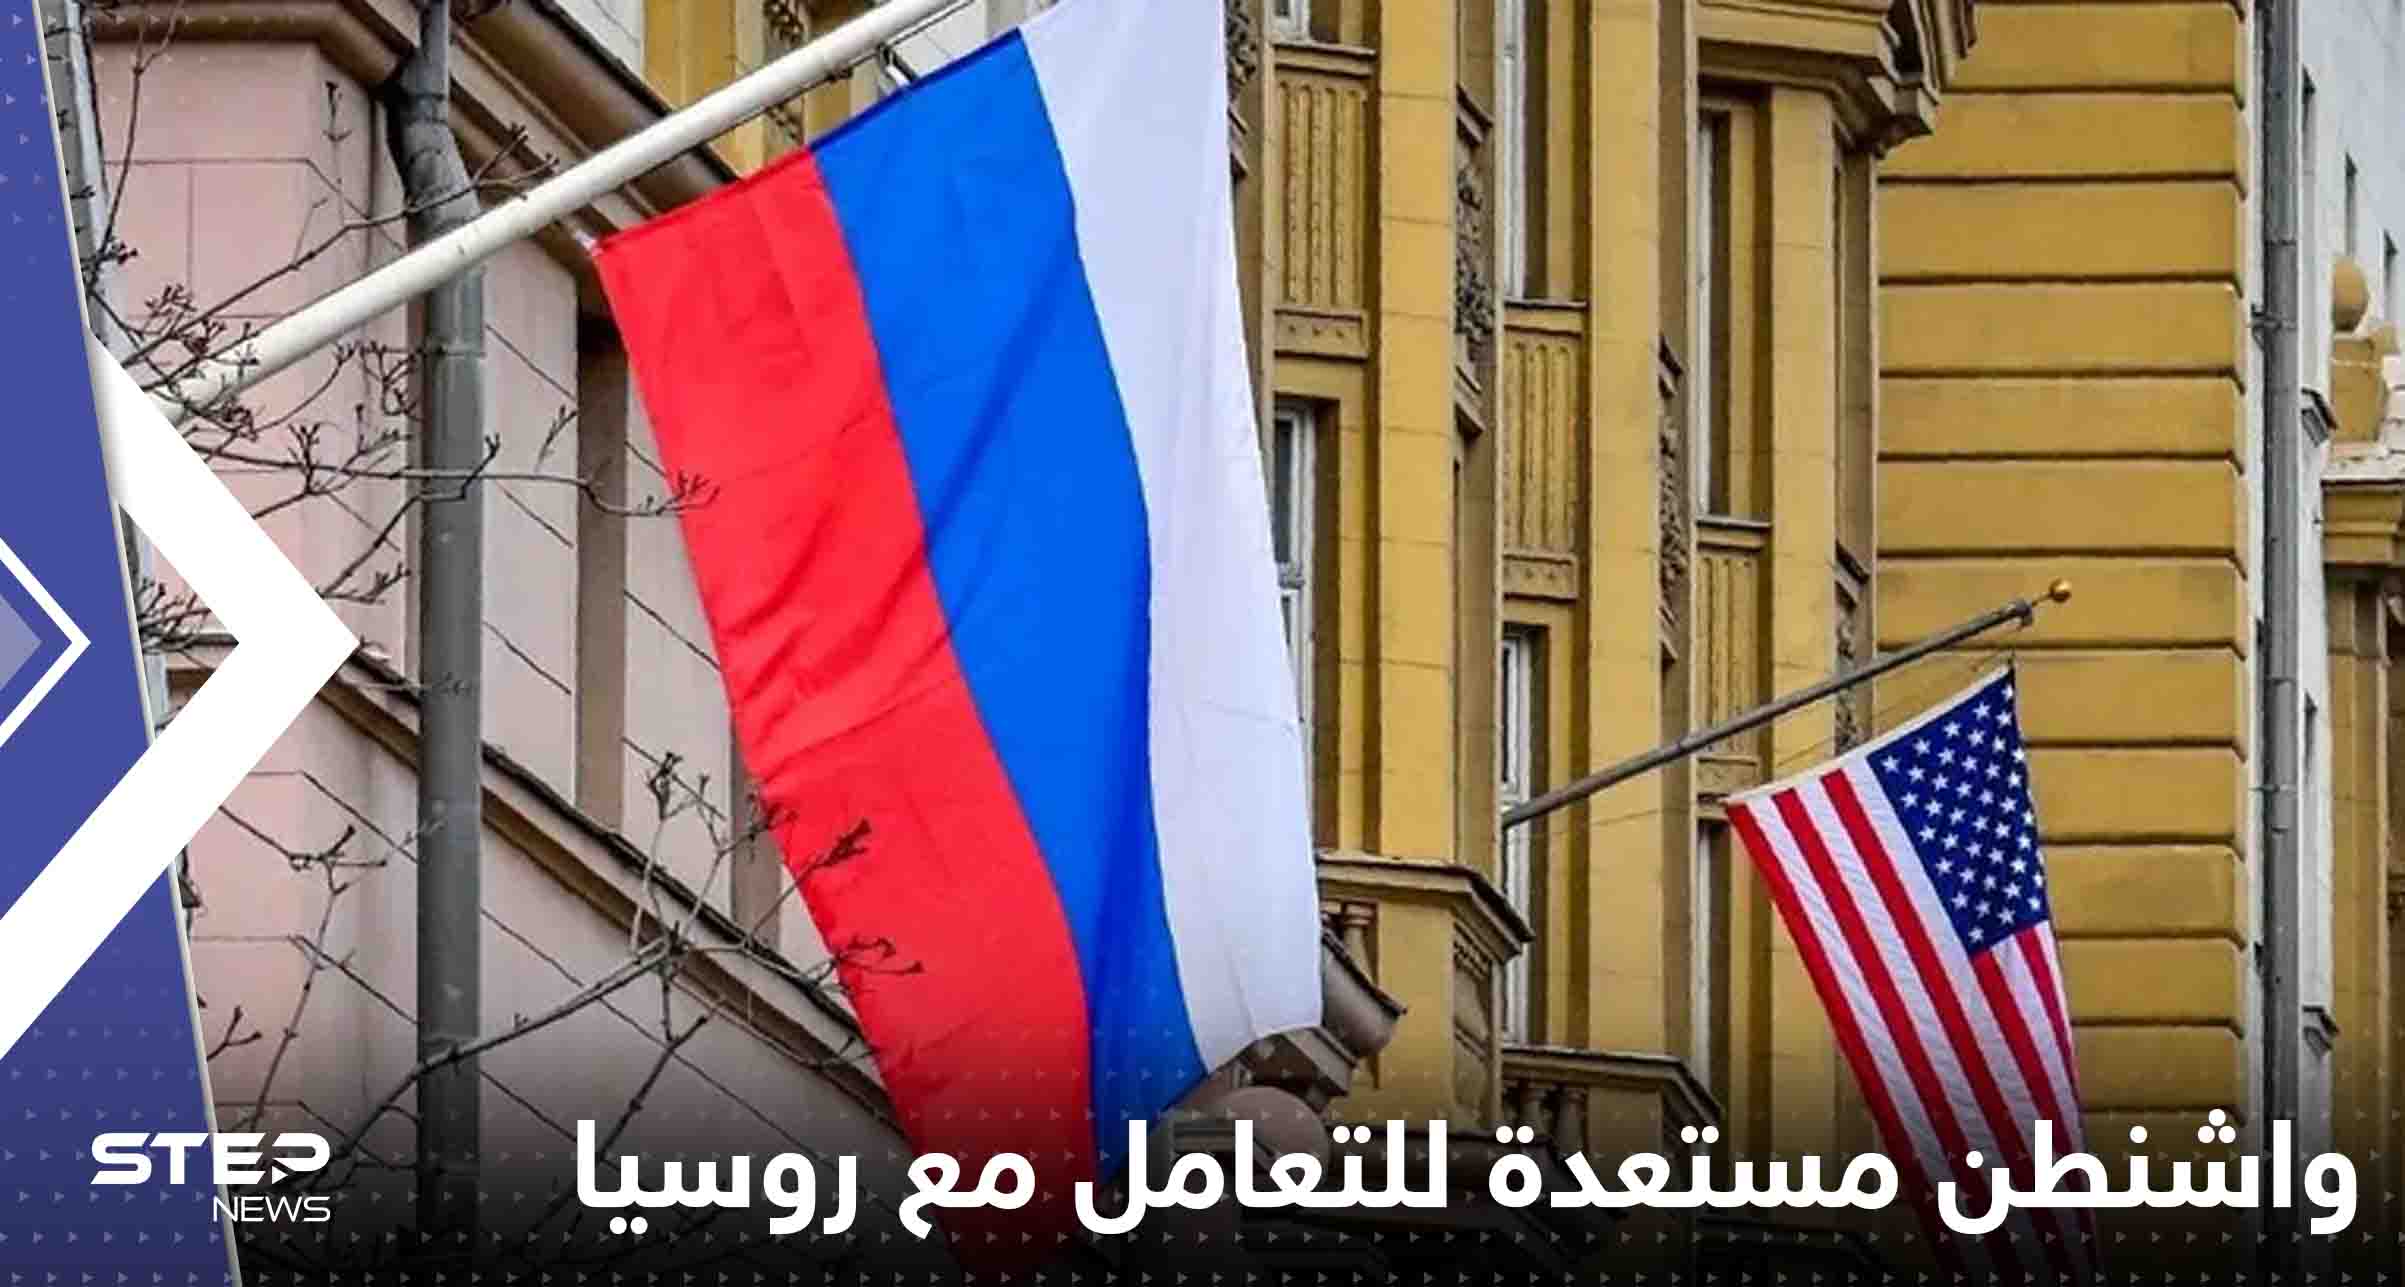 واشنطن مستعدة للتعامل مع روسيا